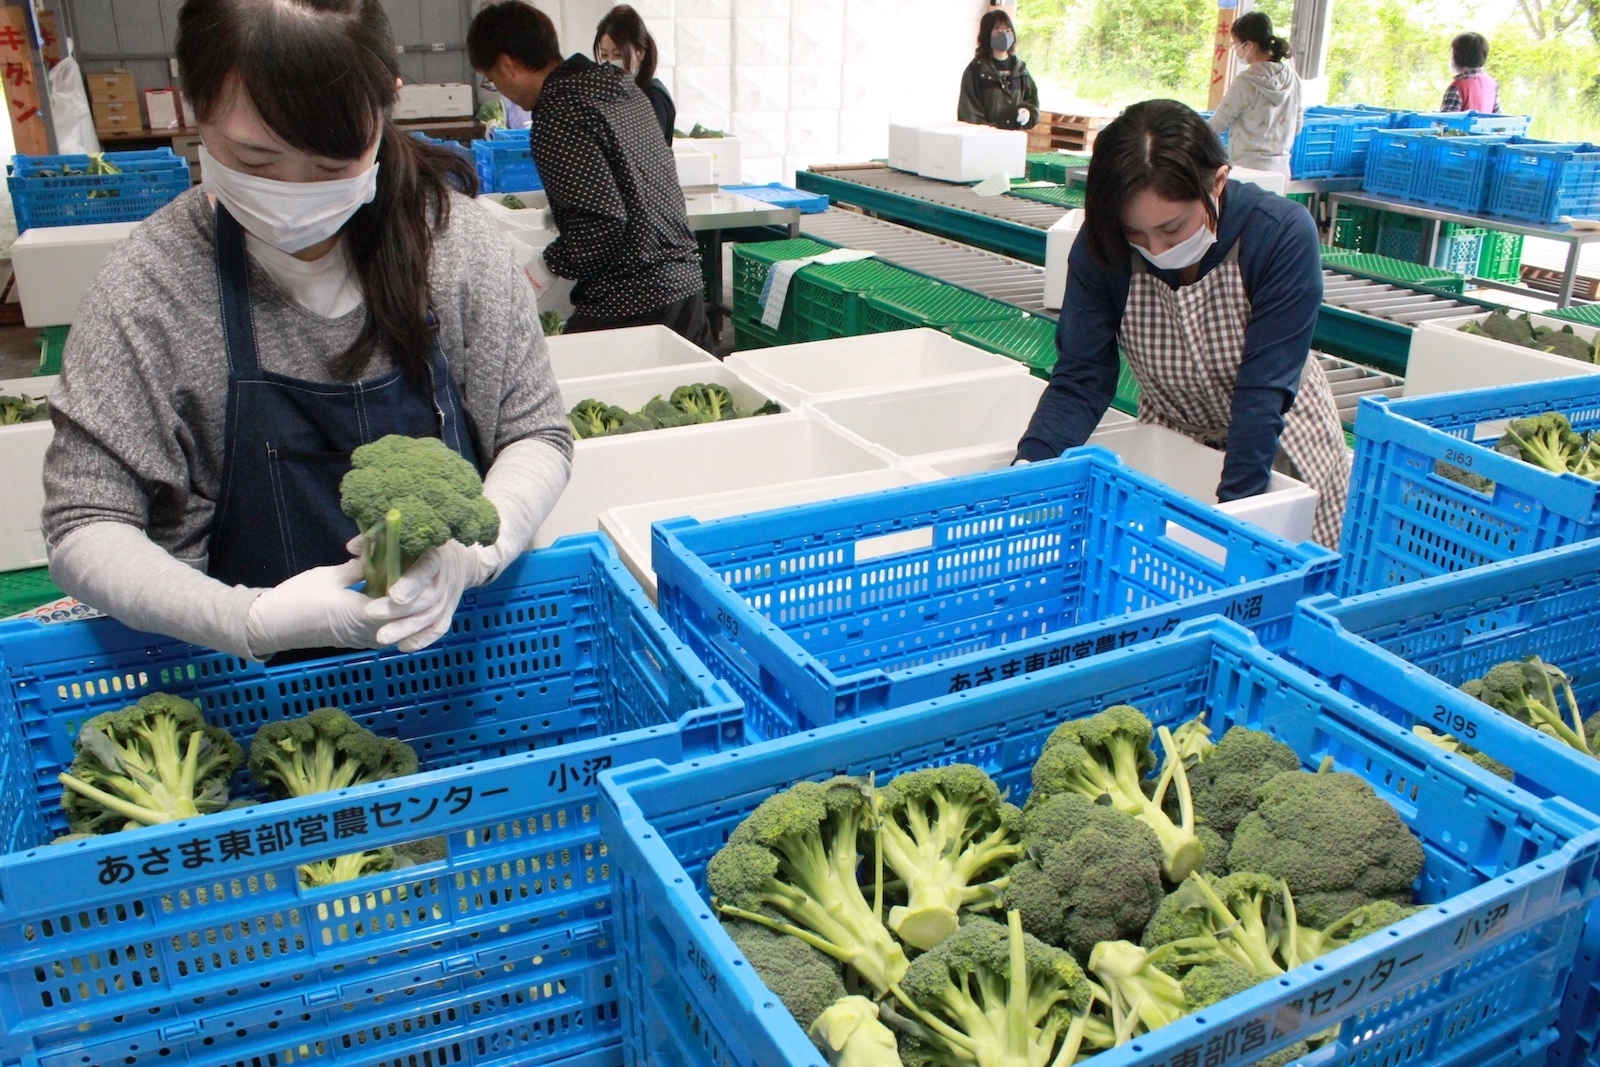 【軽井沢星野エリア】観光業と農業の人材交流の取り組みから生まれた野菜メニューの開発・提供を開始